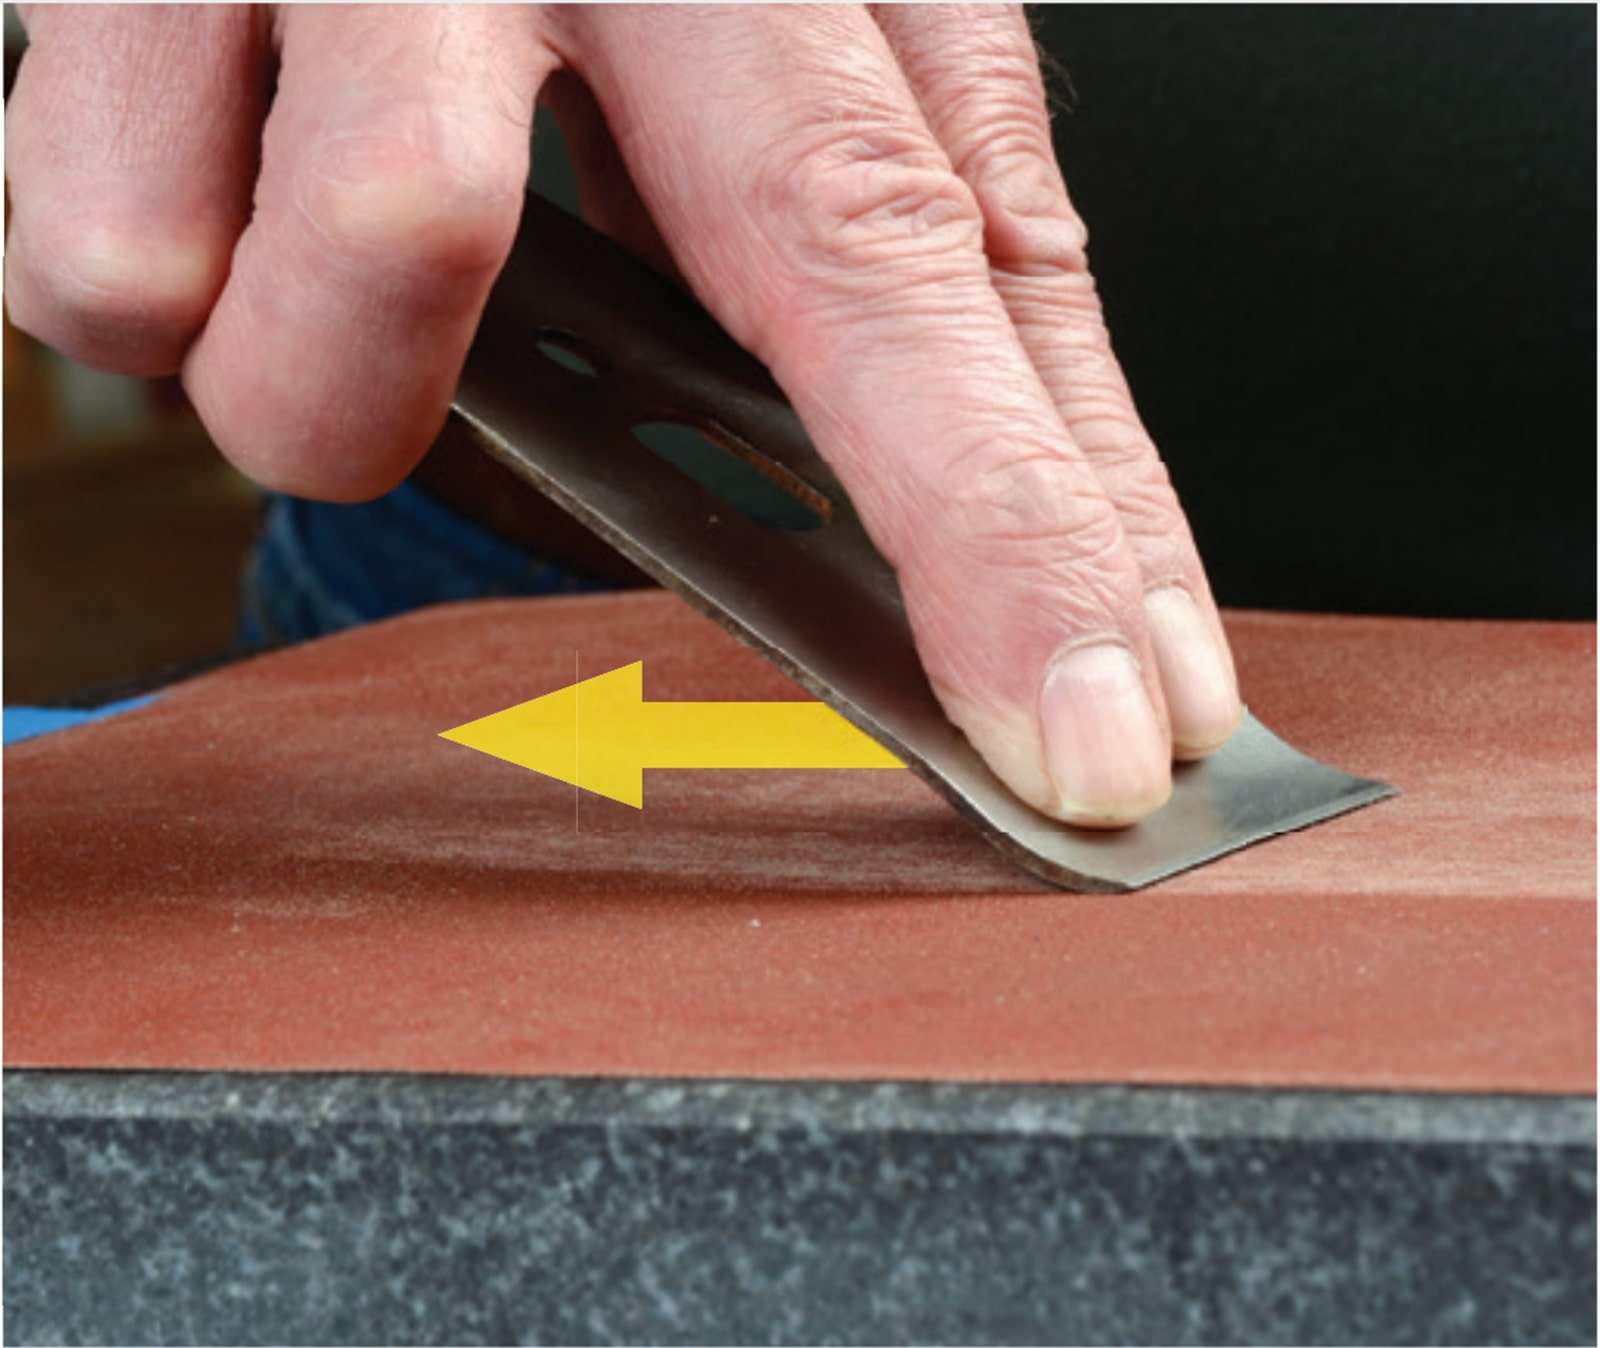 Làm mịn phần trên của bộ phận để giúp các mảnh gỗ đi qua một cách mượt mà mà không bị giãn đoạn. Hãy loại bỏ bất kỳ phần nào nổi lên hay vết cắt và sử dụng chổi đánh bóng để đánh bóng phần này.